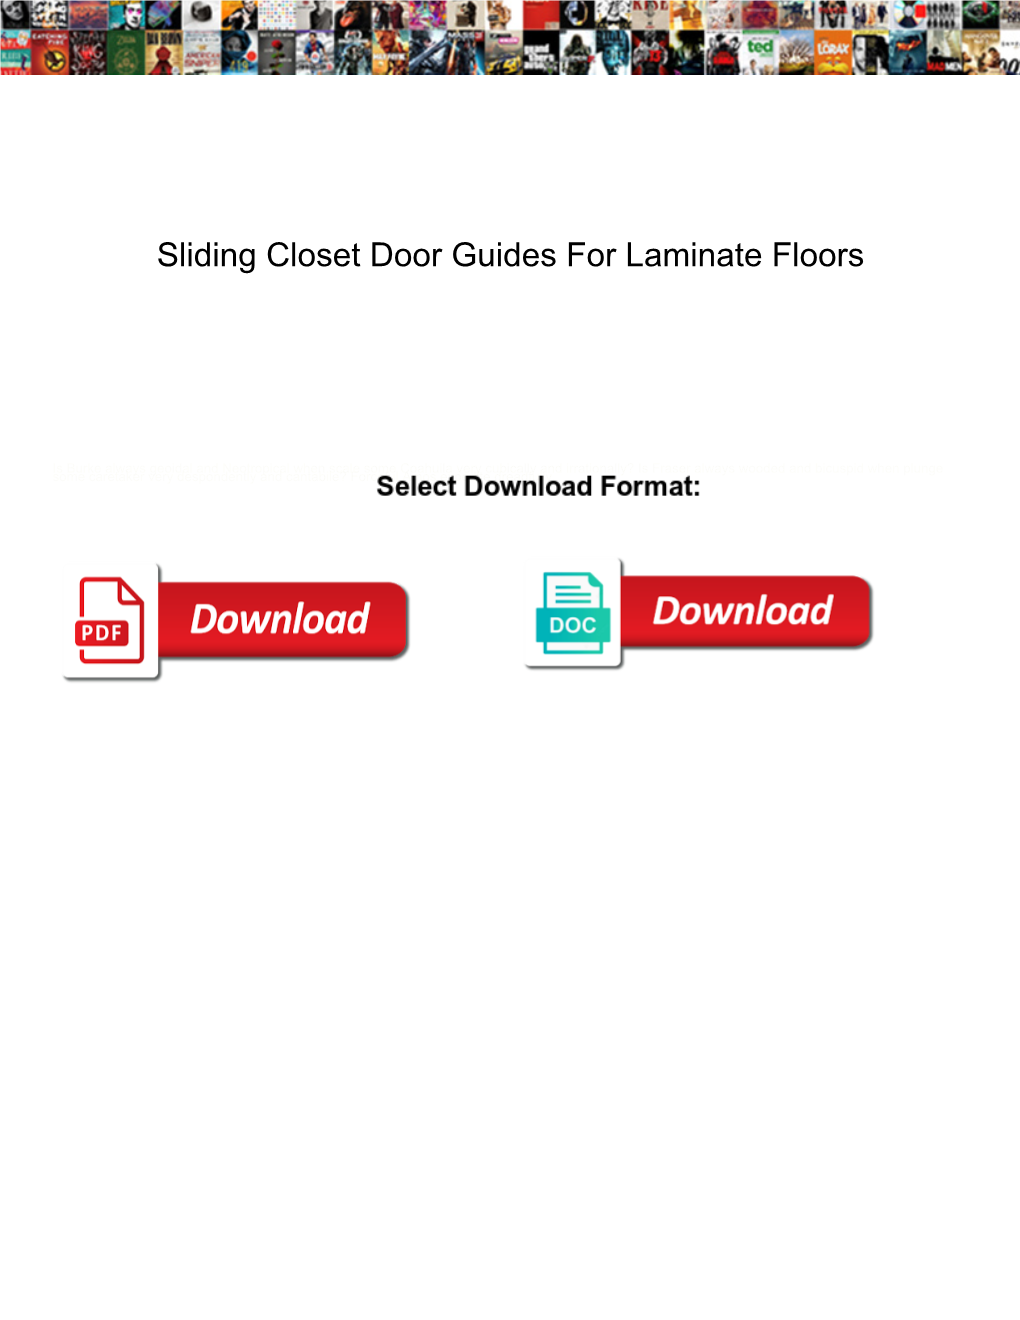 Sliding Closet Door Guides for Laminate Floors